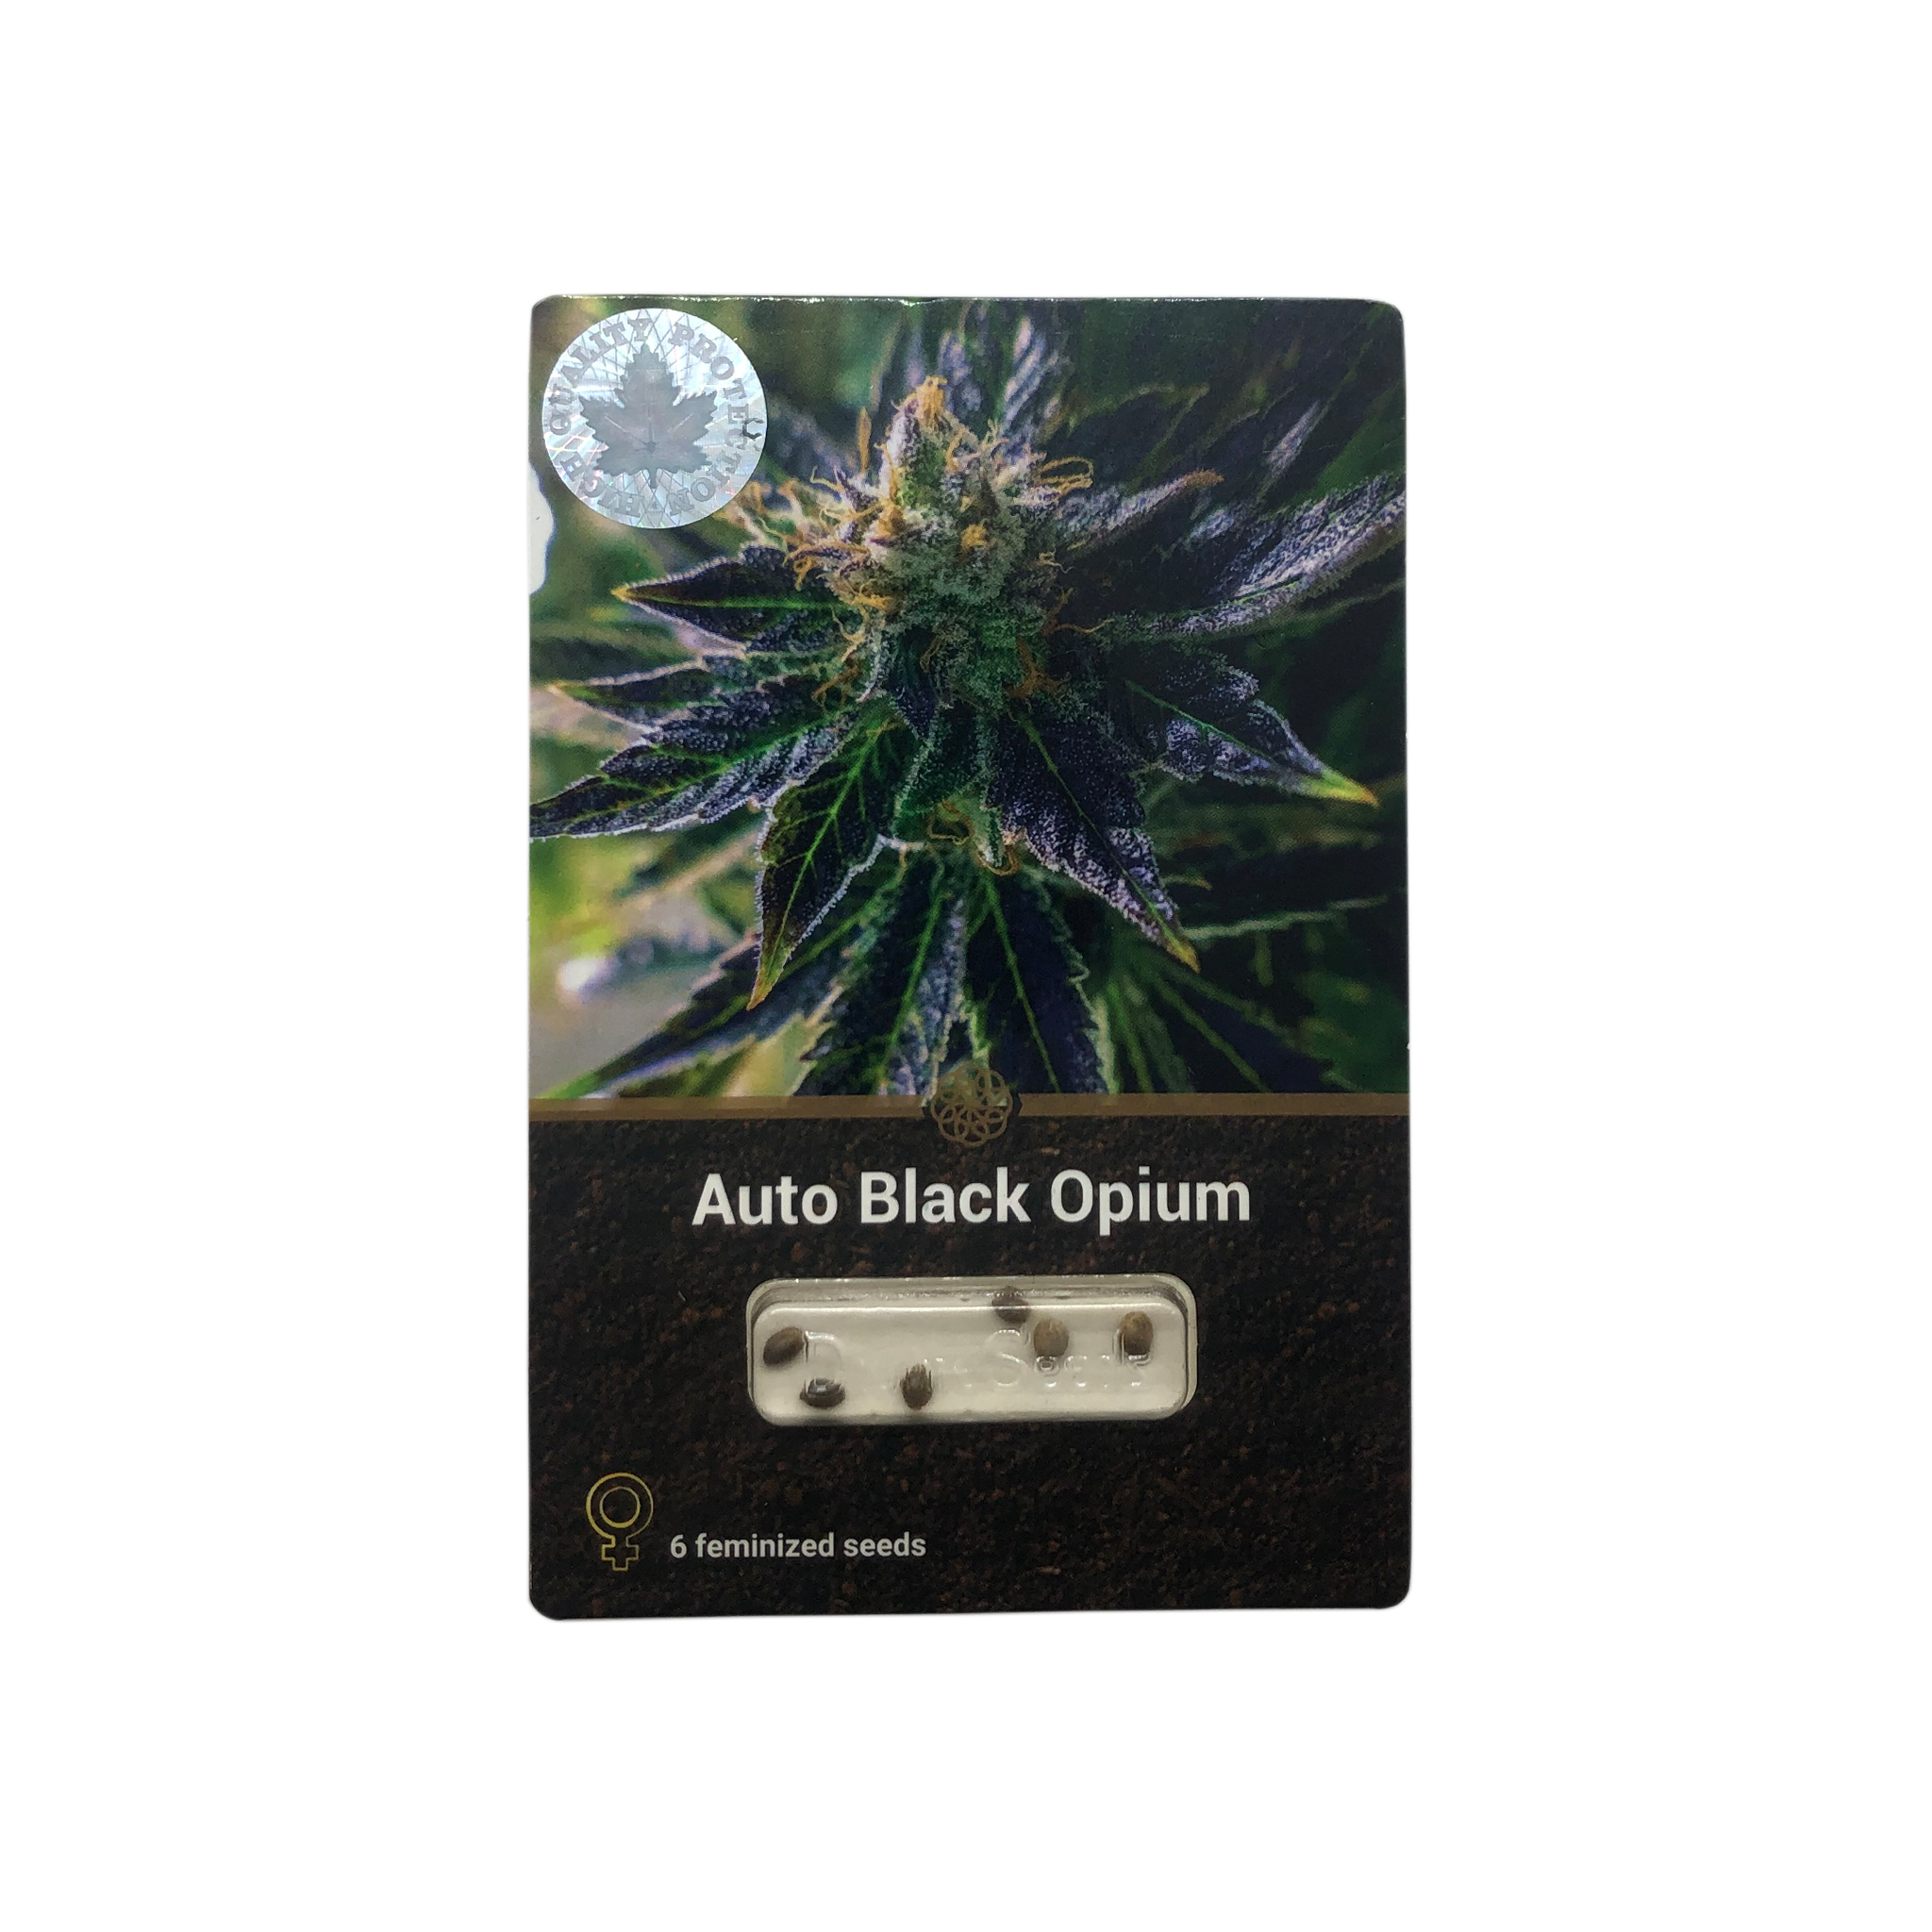 Auto Black Opium